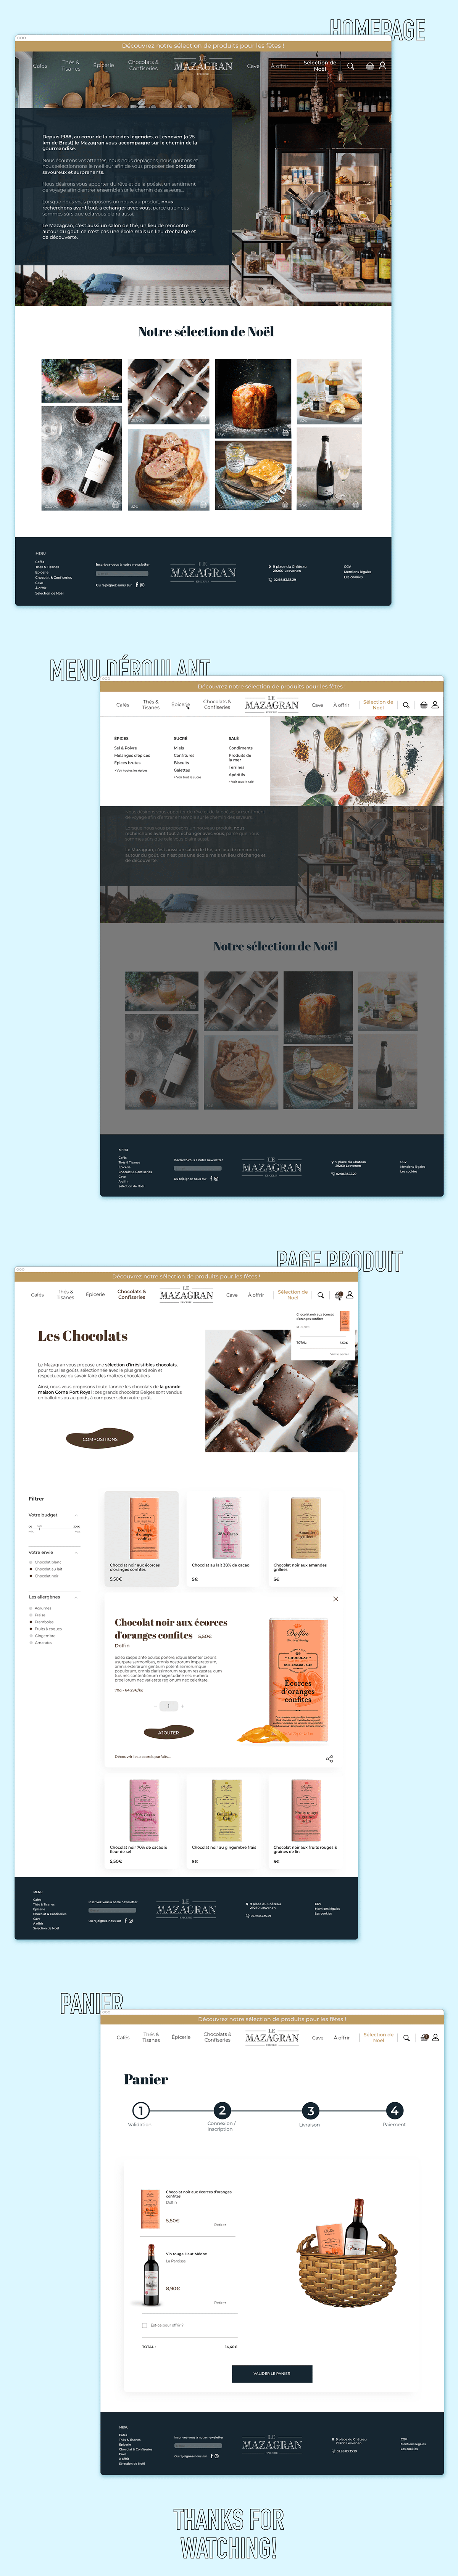 Webdesign ui design graphic design 